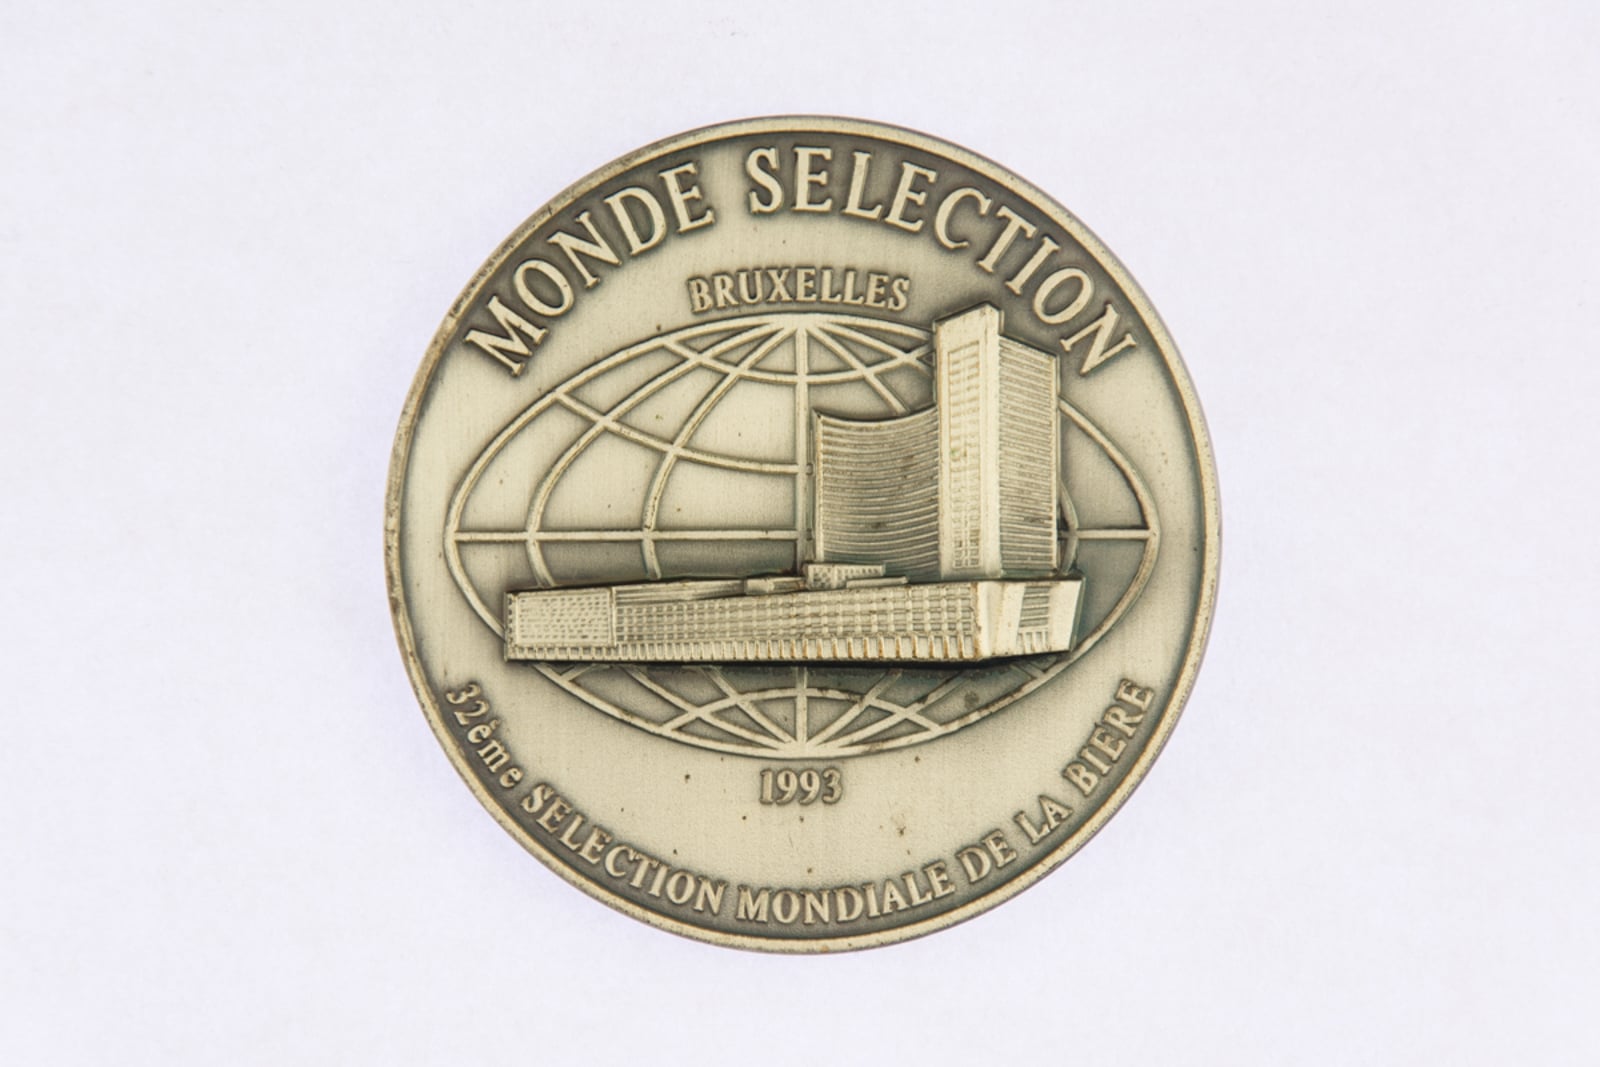 Monde Selection Bruxelles, Medaille d'Argent 1993